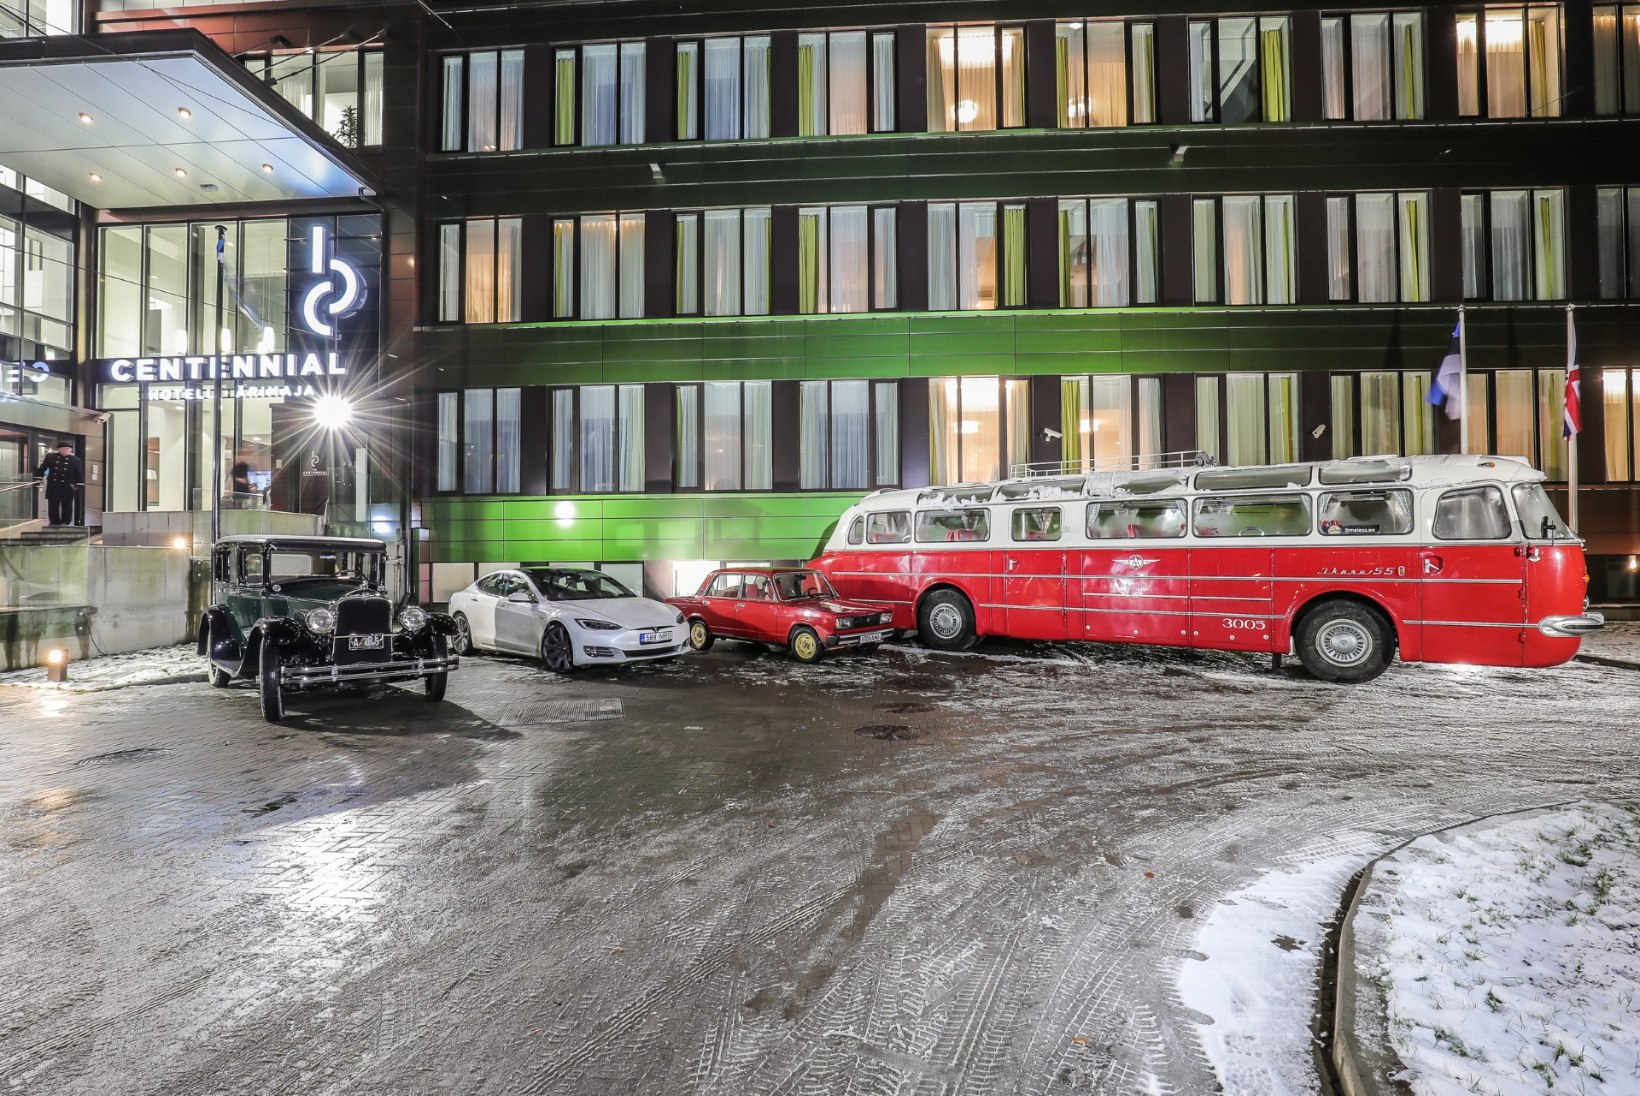 PILDID | Vaata, kes väisasid Centennial Hotel Tallinn hotelli suurejoonelist avamist! 